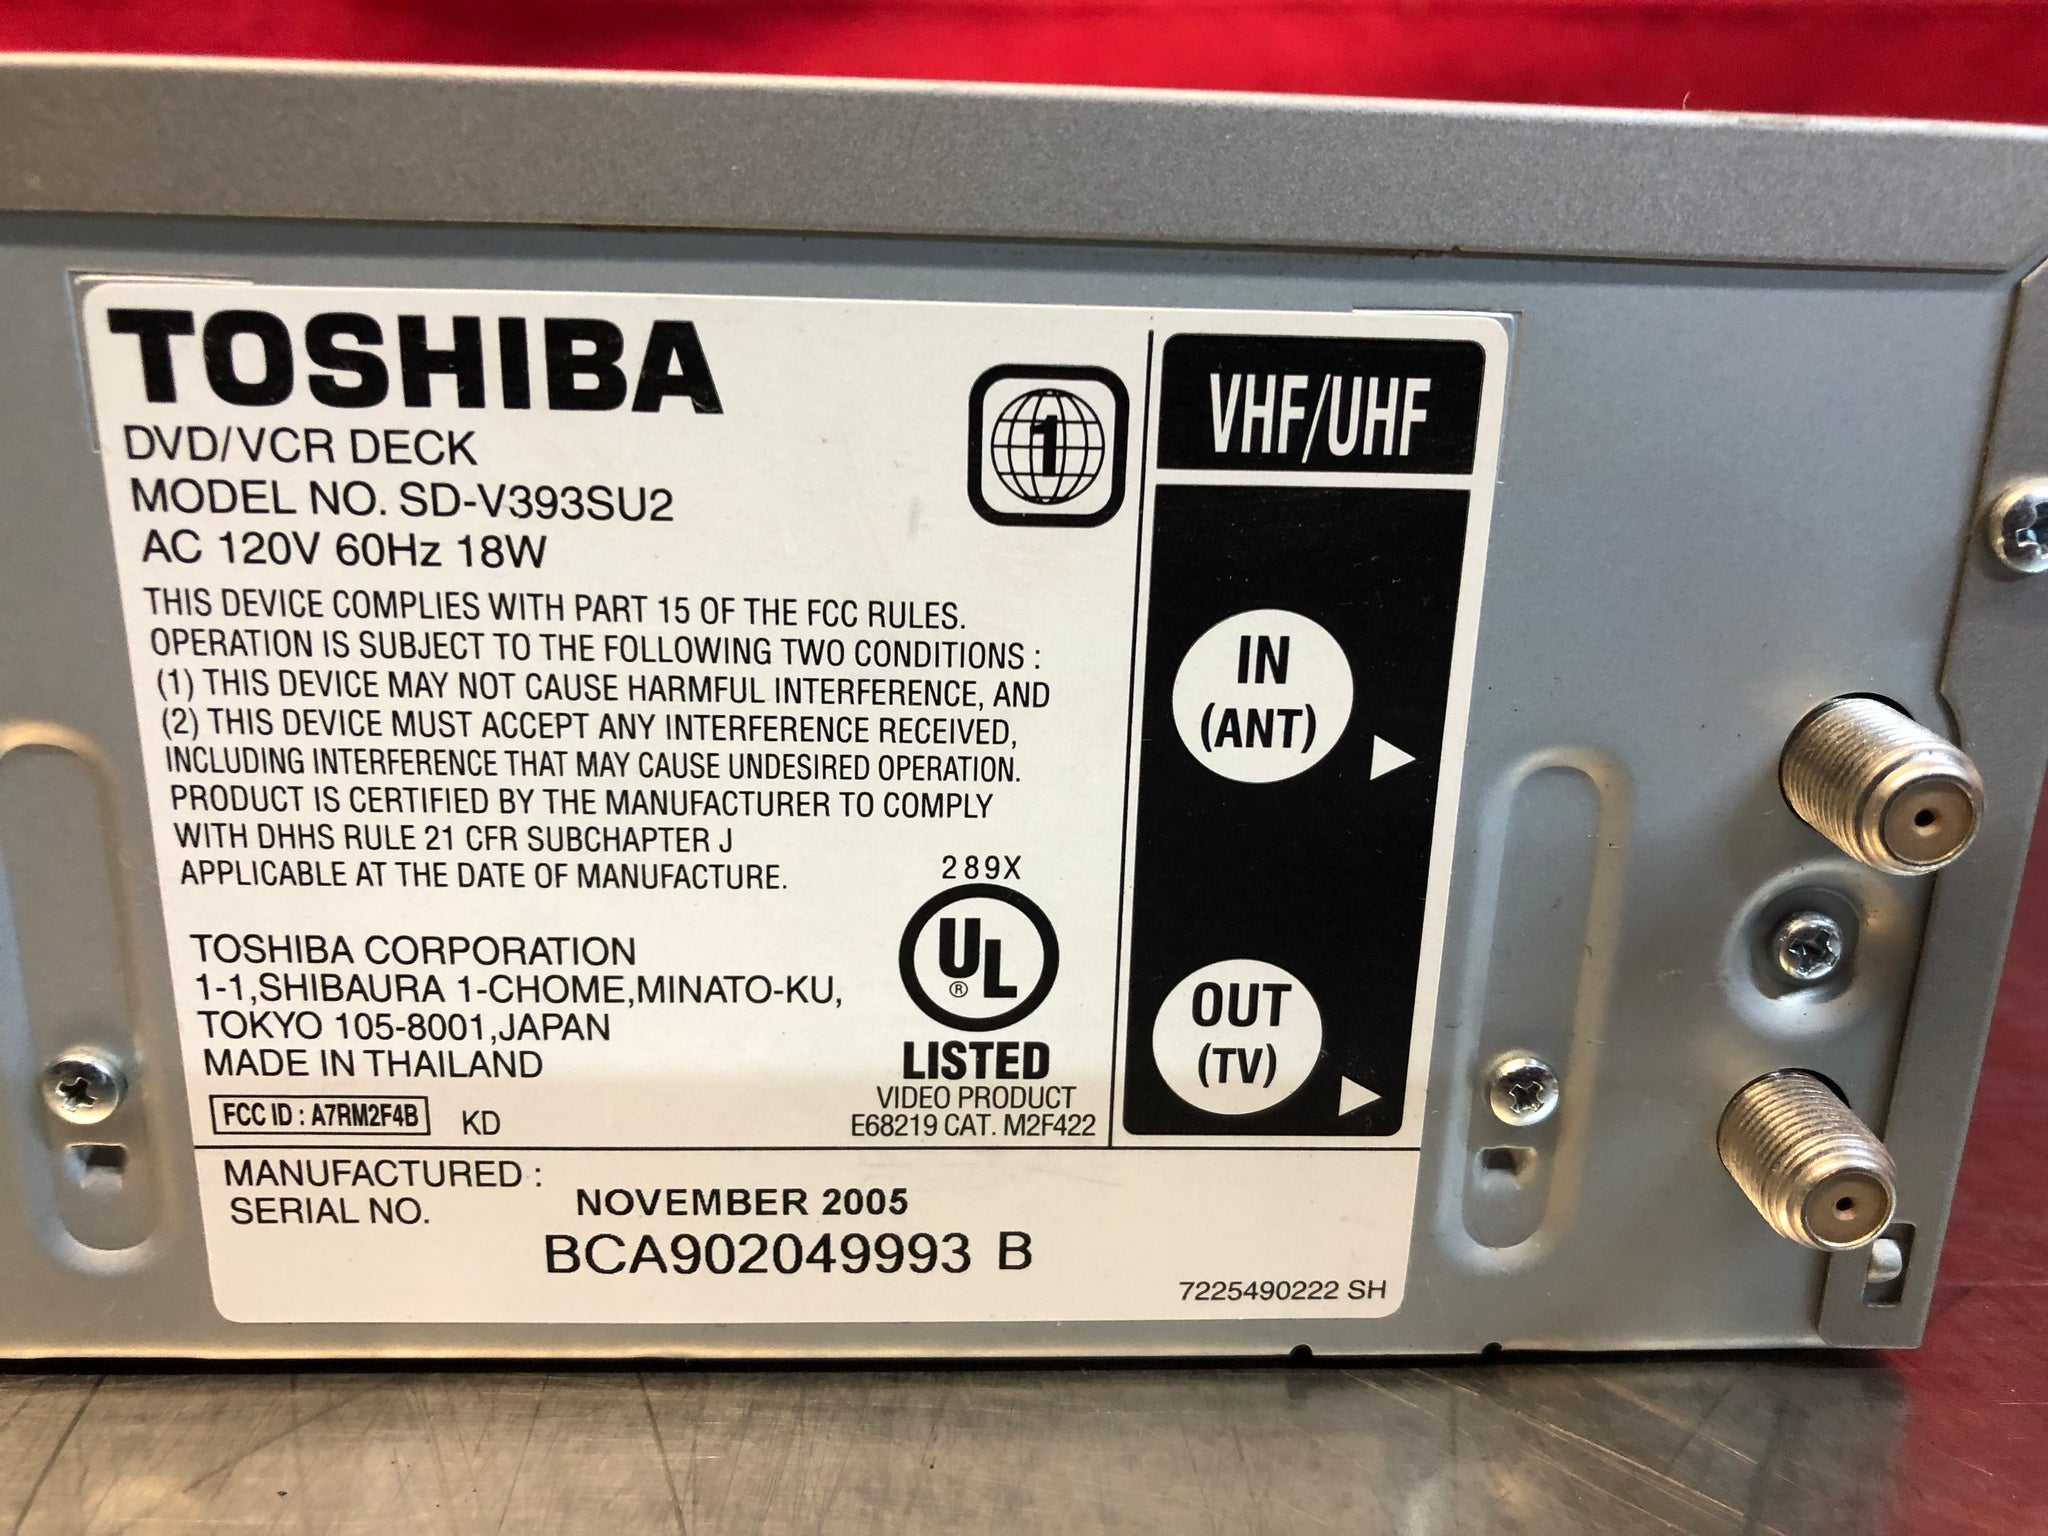 TOSHIBA VCR/DVD Combo DVD/VHS VCR - SD-V393SU2 - Great Condition - NO Remote